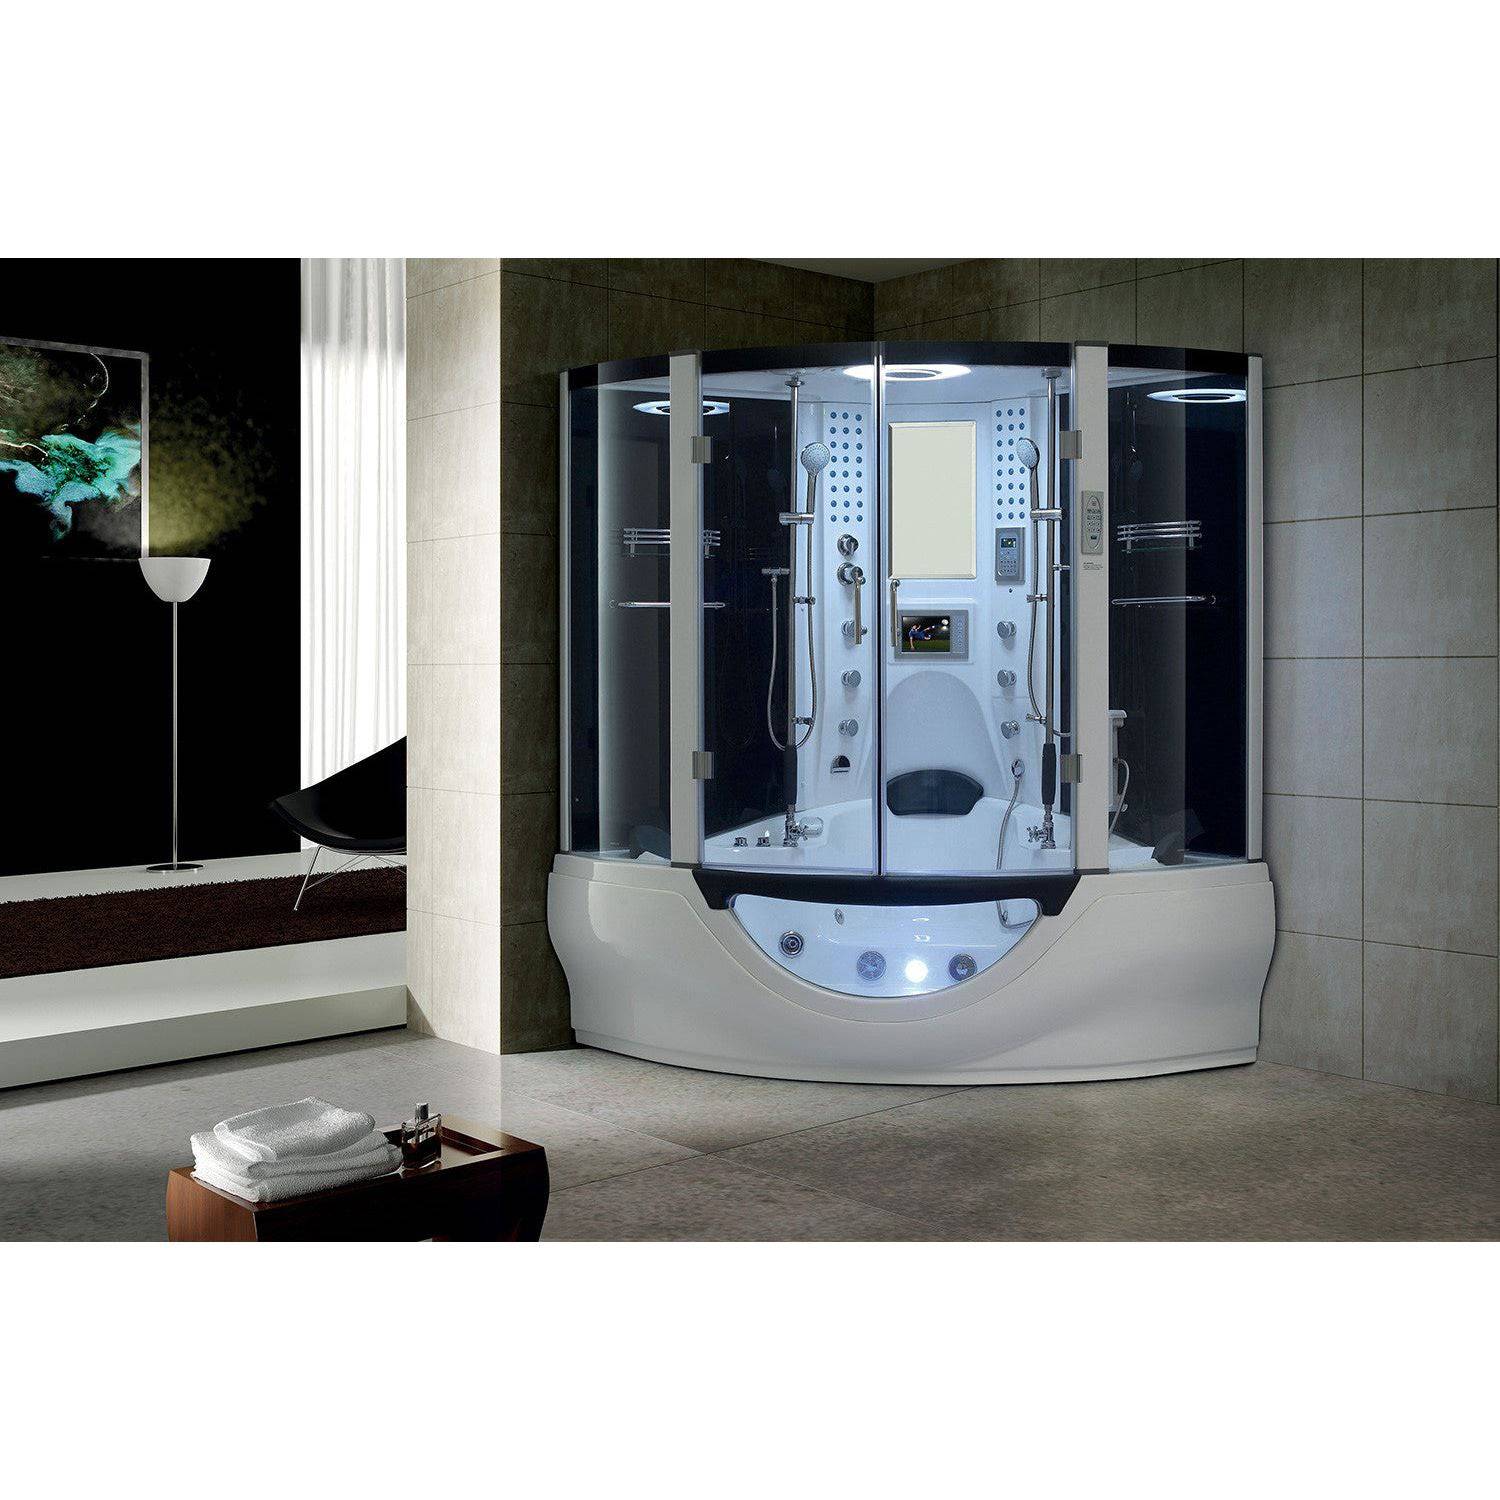 Maya Bath Valencia 2-Person Steam Shower & Tub Combo w/ TV - Serenity Provision